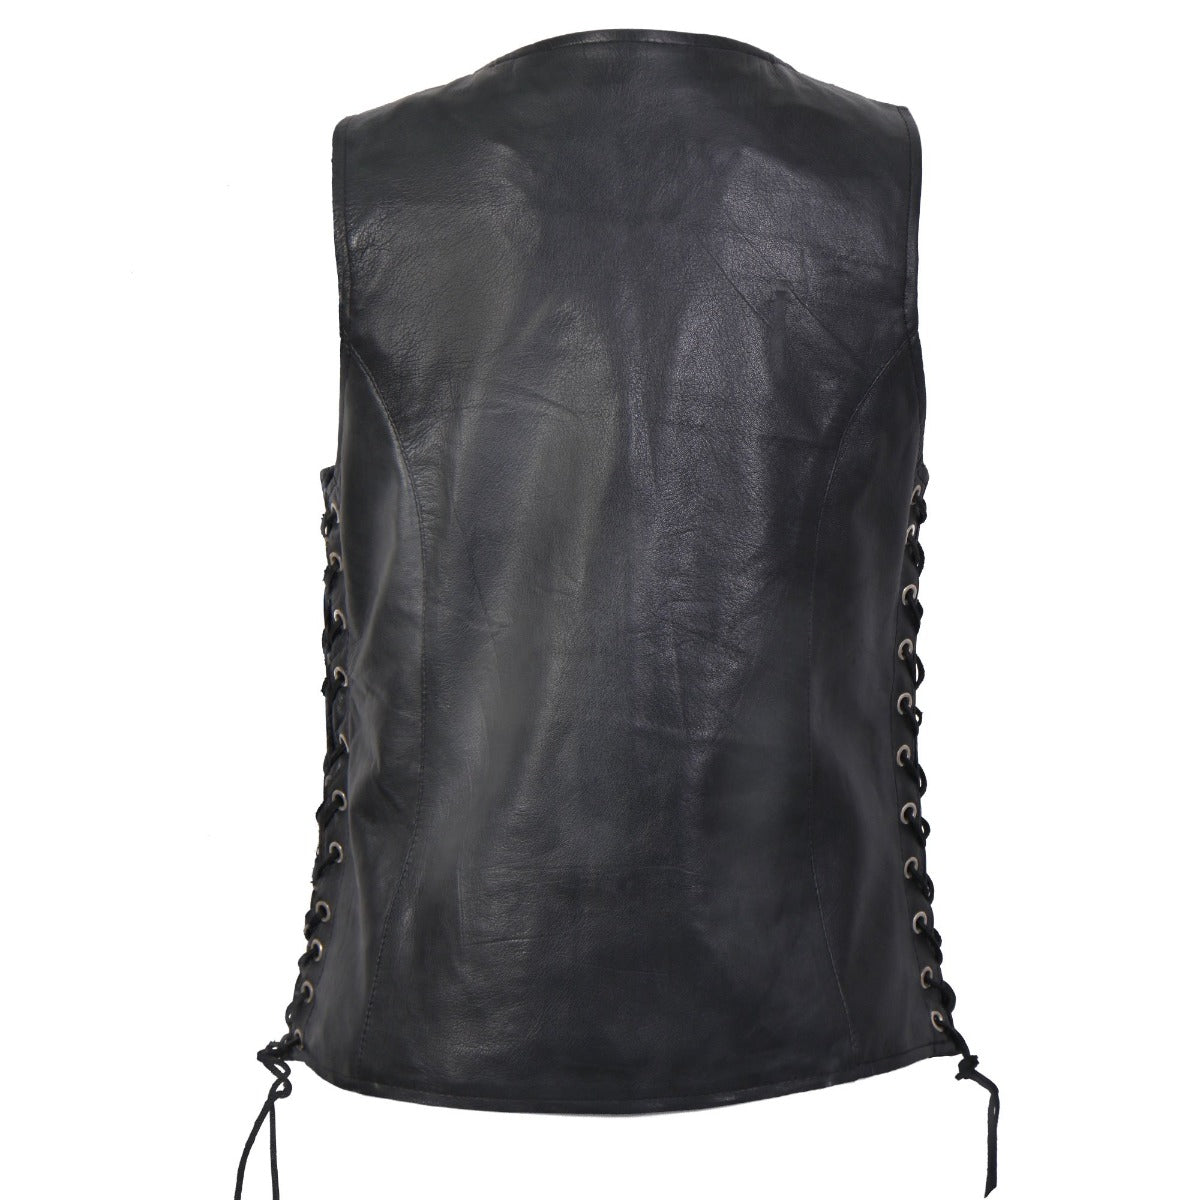 Hot Leathers Women's Black Lambskin Vest W/Side Lace